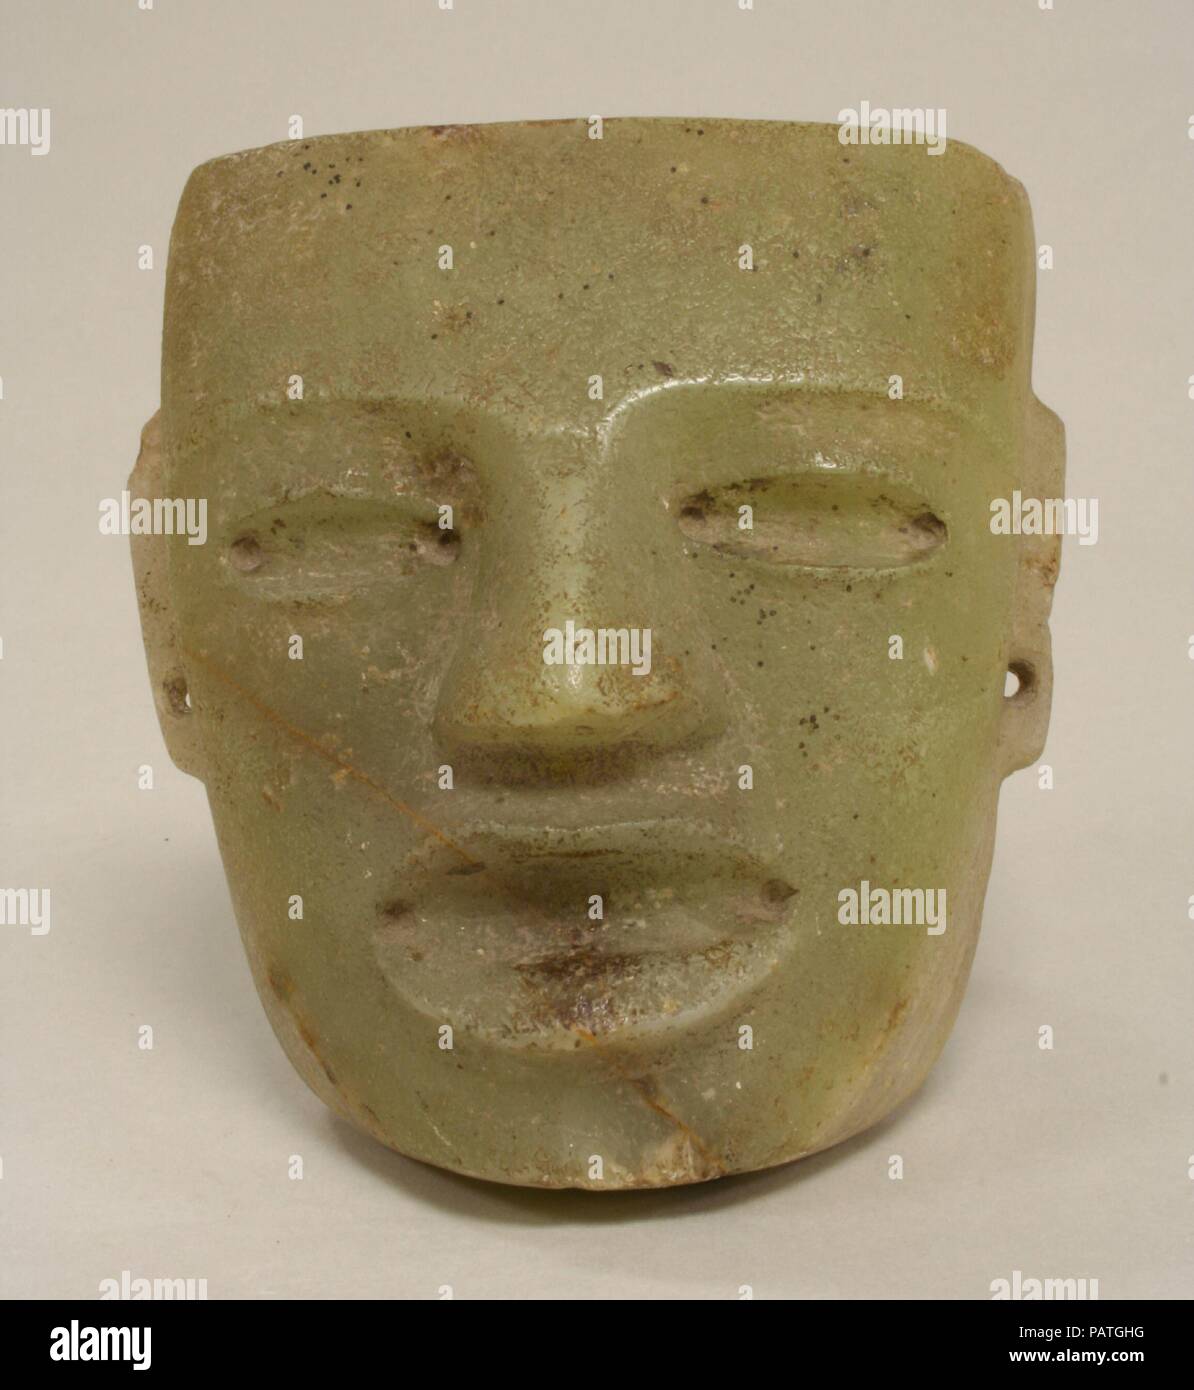 Maske. Kultur: Teotihuacan. Abmessungen: Insgesamt: 5 1/4 x 4 3/4 in. (13.34 x 12.07 cm) Andere: 4 3/4 in. (12,07 cm). Datum: 4.-8. Jh.. Es gab keine Tradition der Portraitmalerei in der großen zentralen Mexiko City von Teotihuacan, aber Masken mit der Darstellung der menschlichen Gesicht sind reichlich in der Style mit dem Standort verknüpft. Mit seinen geometrisch erzeugt horizontale Braue, dreieckige Nase, und ovale Augen und Mund, diese Maske zeigt die idealisierte Gesichtsform, die als Symbol zu funktionieren scheint, ähnlich wie bei anderen standardisierten Motive in der Kunst von Teotihuacan vorhanden. Die Vertiefungen der Augen und der Mund s Stockfoto